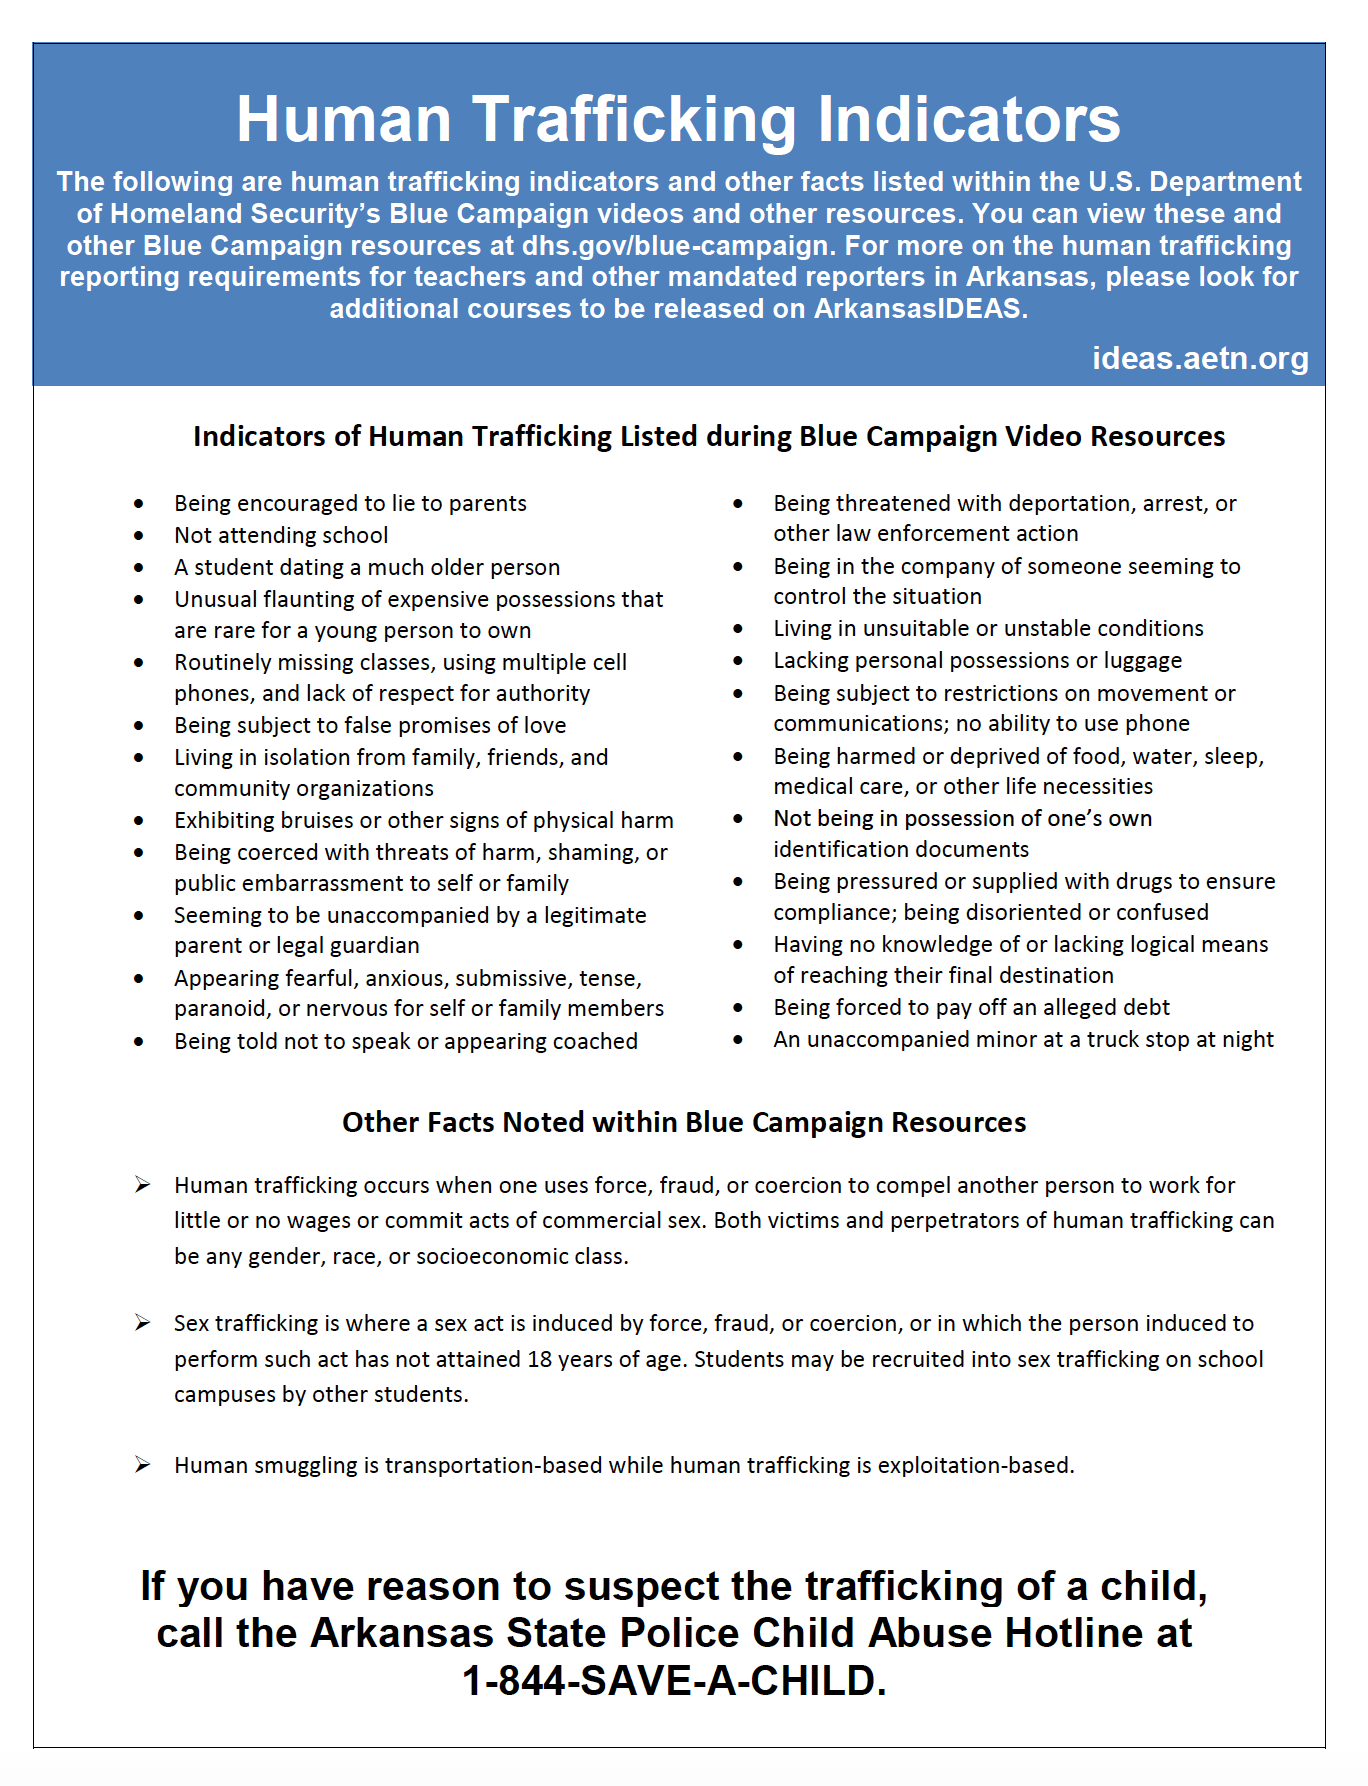 Human Trafficking Resource